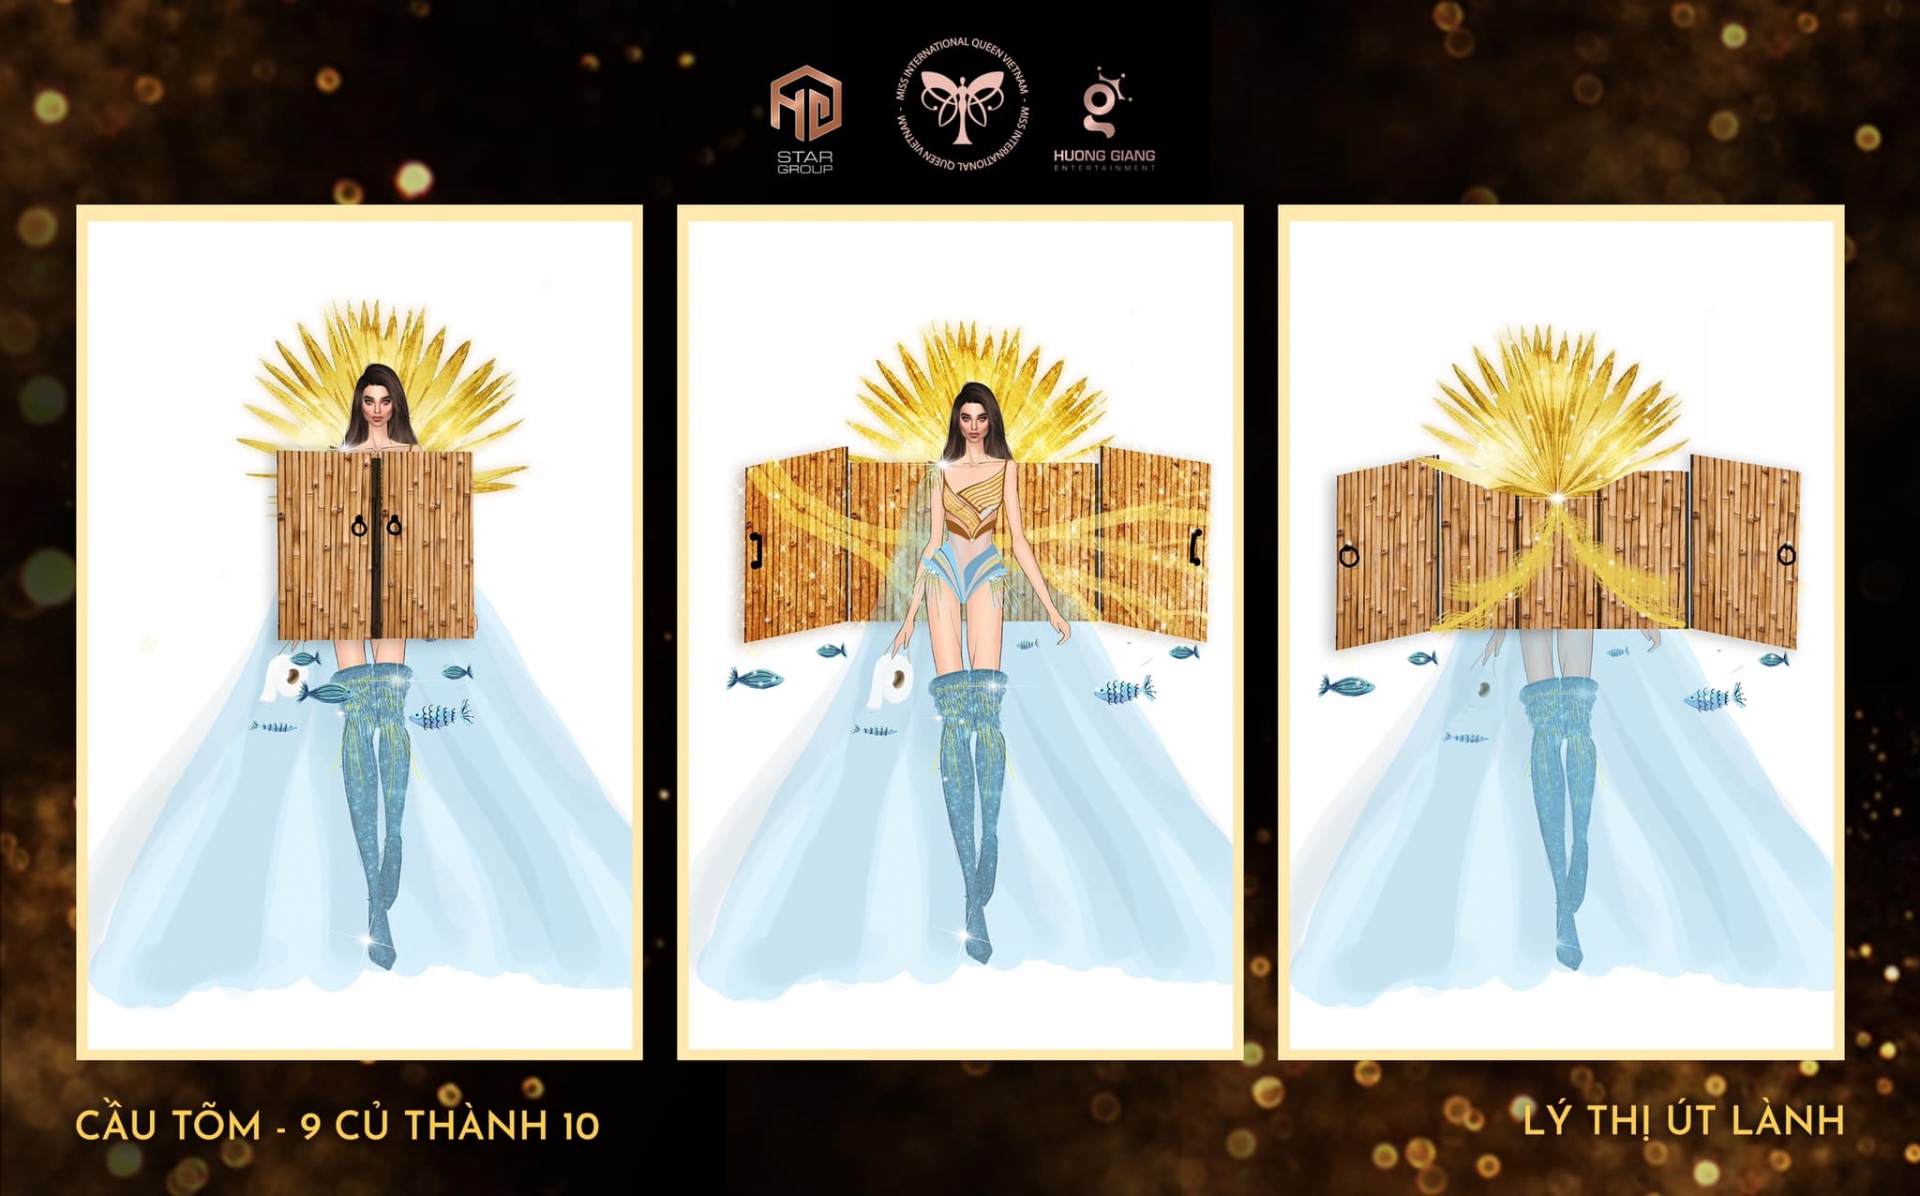 'Cầu tõm' là trang phục gây tranh cãi nhất trong cuộc thi thiết kế trang phục dân tộc cho Miss International Queen